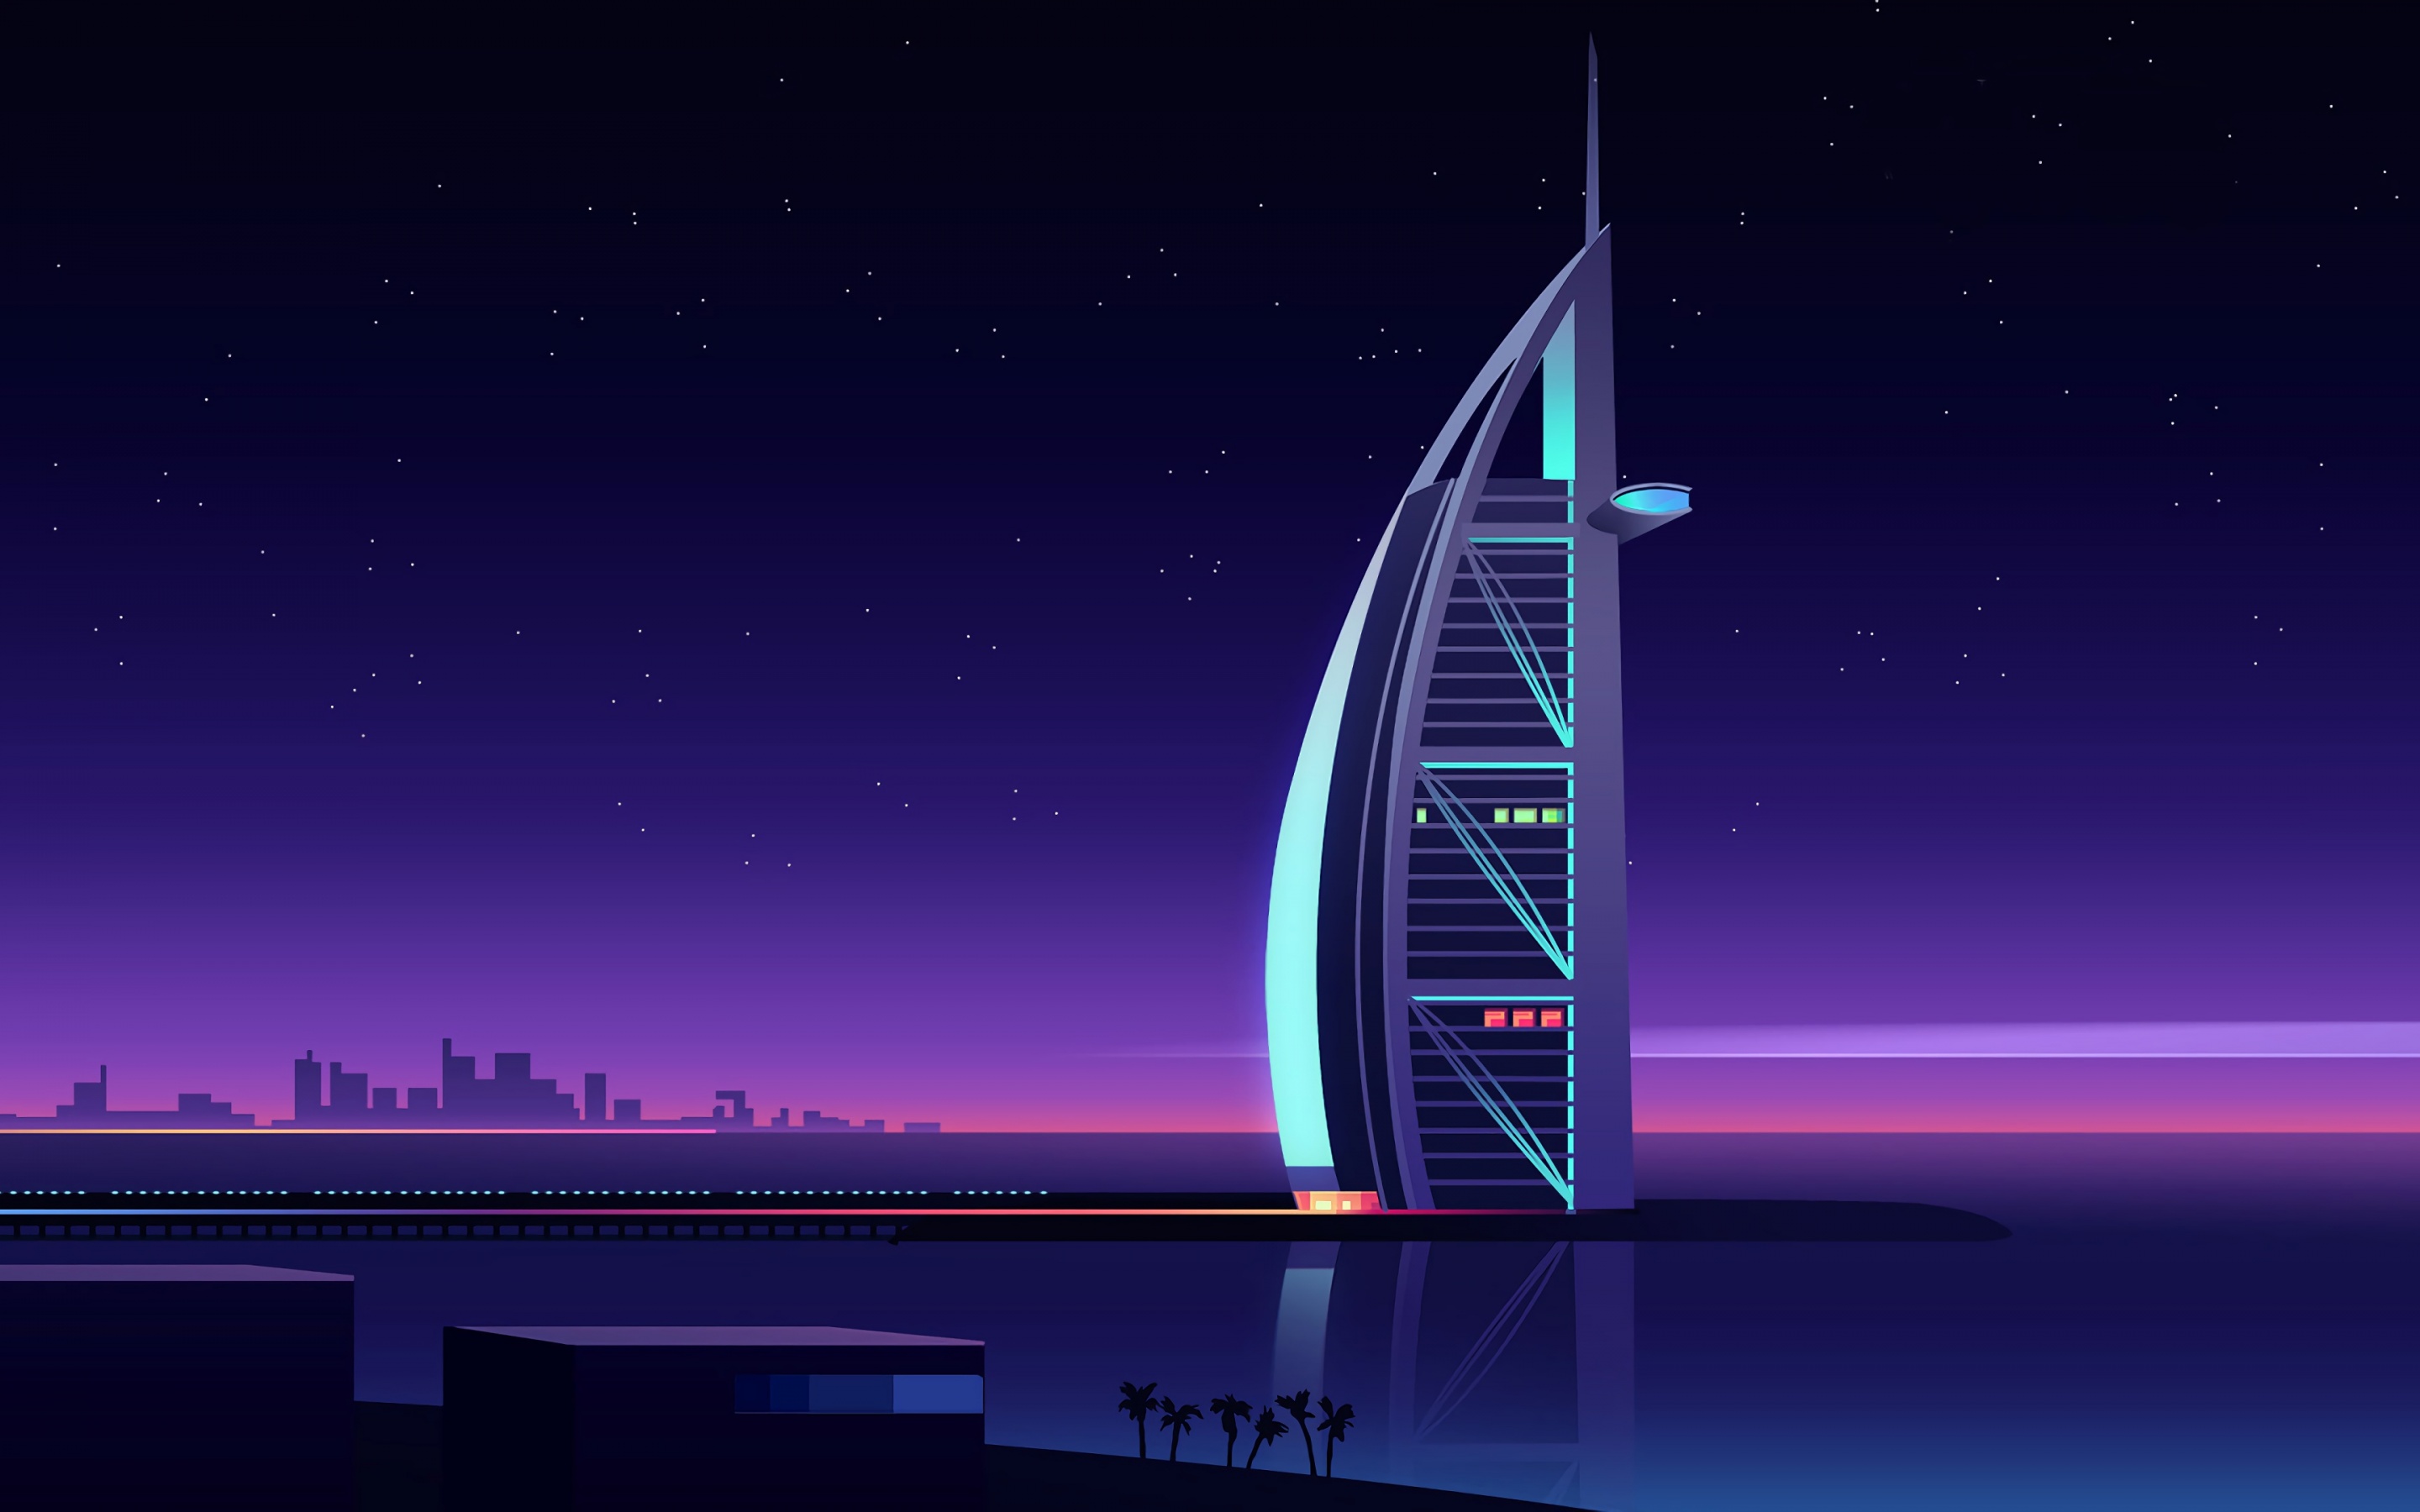 Khách sạn sang trọng Burj Al Arab - điểm đến mơ ước của những người đam mê du lịch. Với kiến trúc độc đáo, dịch vụ hoàn hảo và tiện ích đẳng cấp, một đêm nghỉ tại khách sạn này chắc chắn sẽ là một trải nghiệm khó quên. Hãy khám phá khách sạn sang trọng nhất thế giới này qua hình ảnh đẹp mắt!